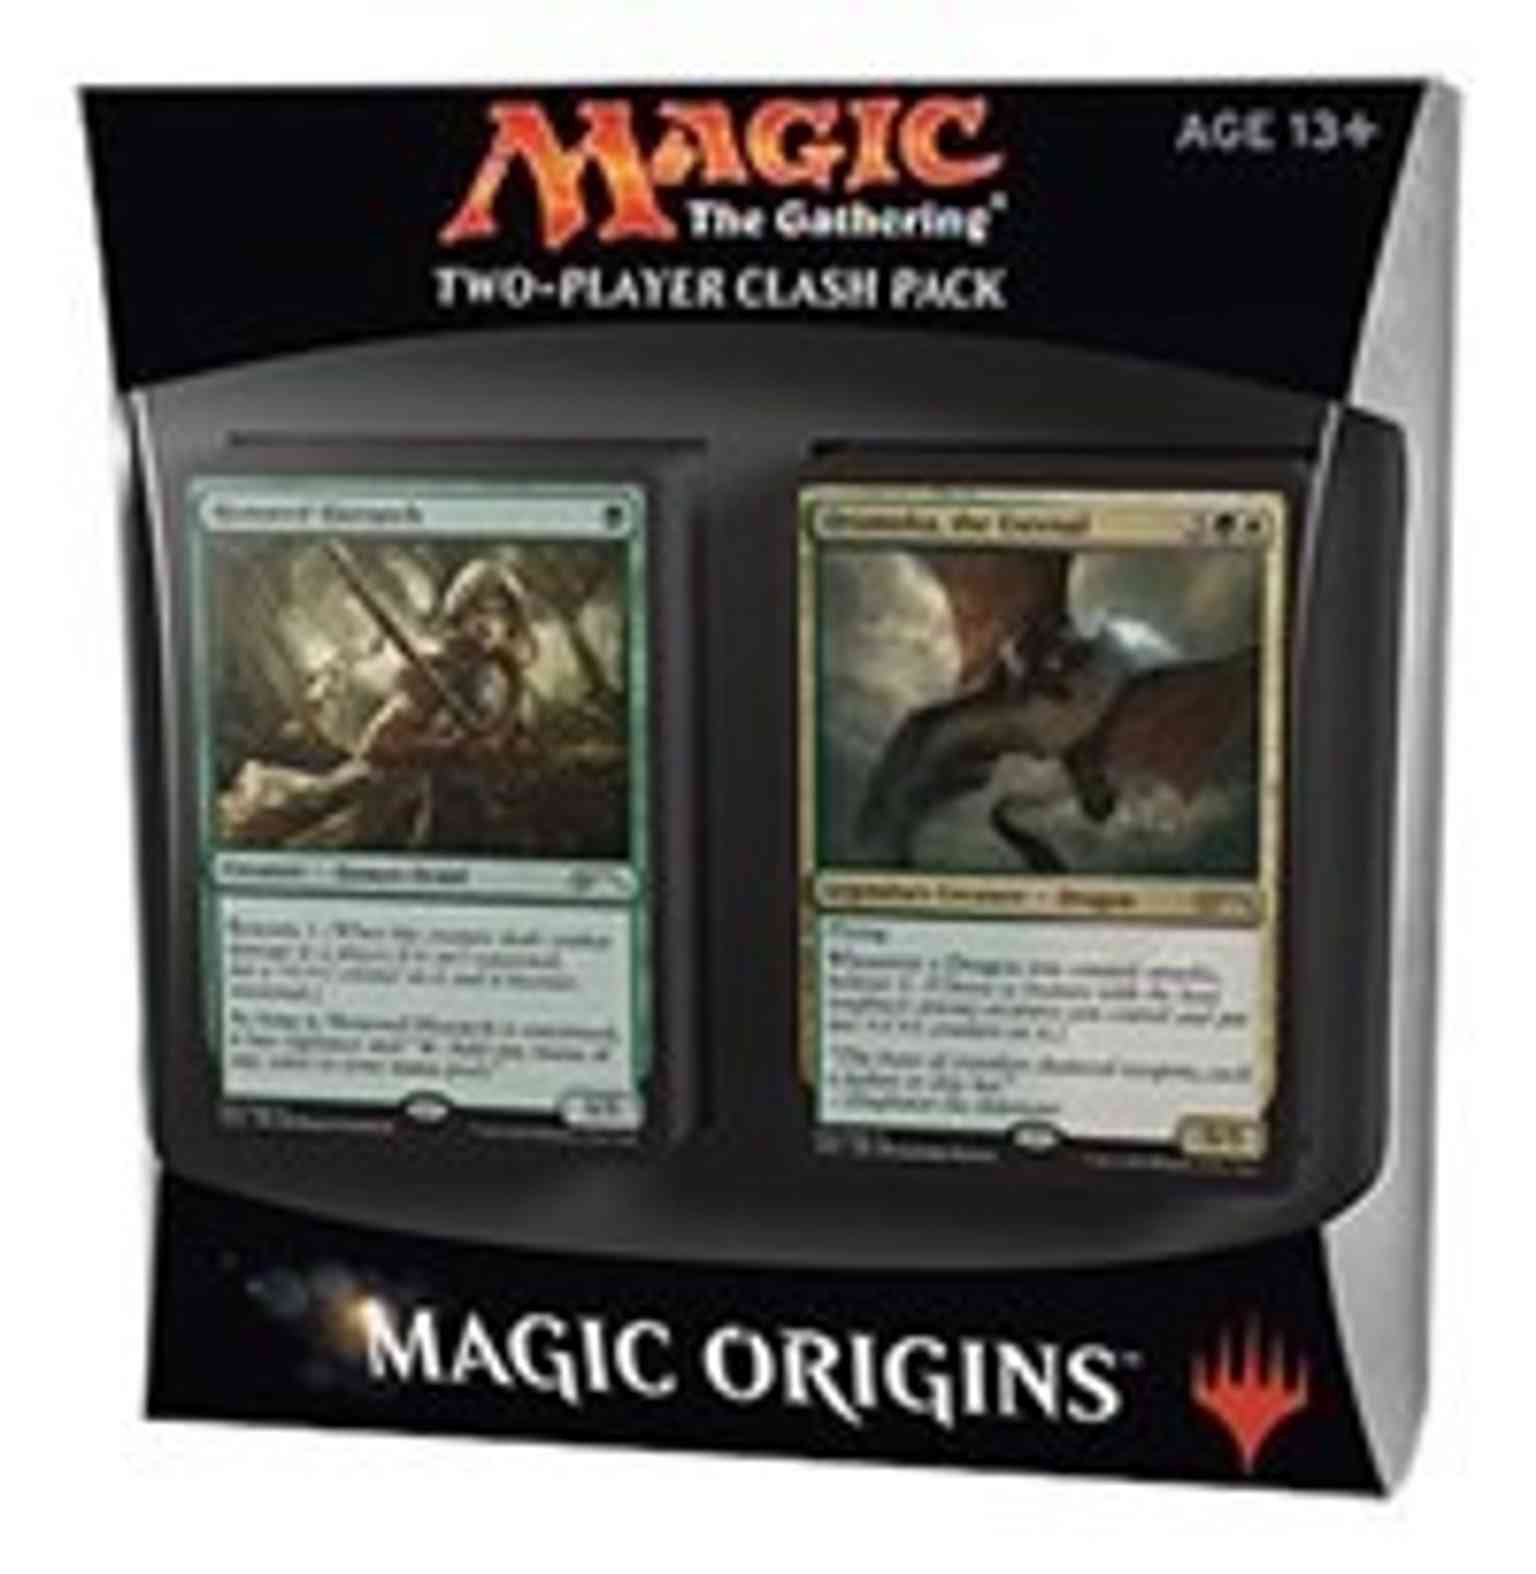 Magic Origins - Clash Pack magic card front